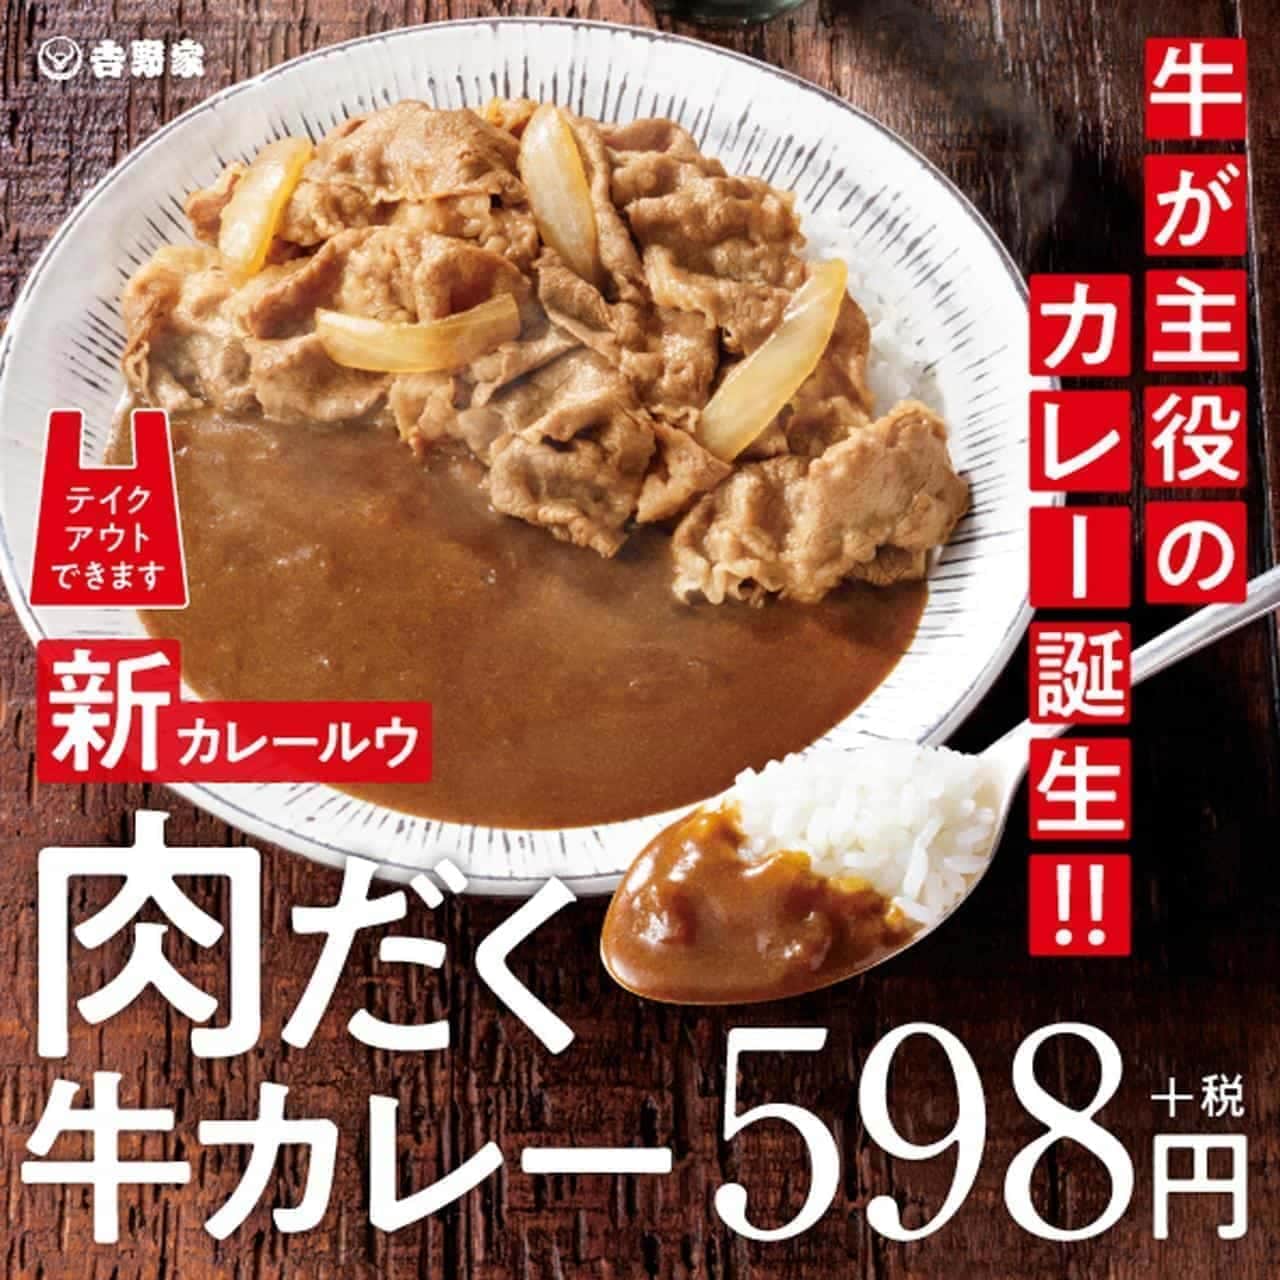 Yoshinoya "Meaty Beef Curry" "W Bento"